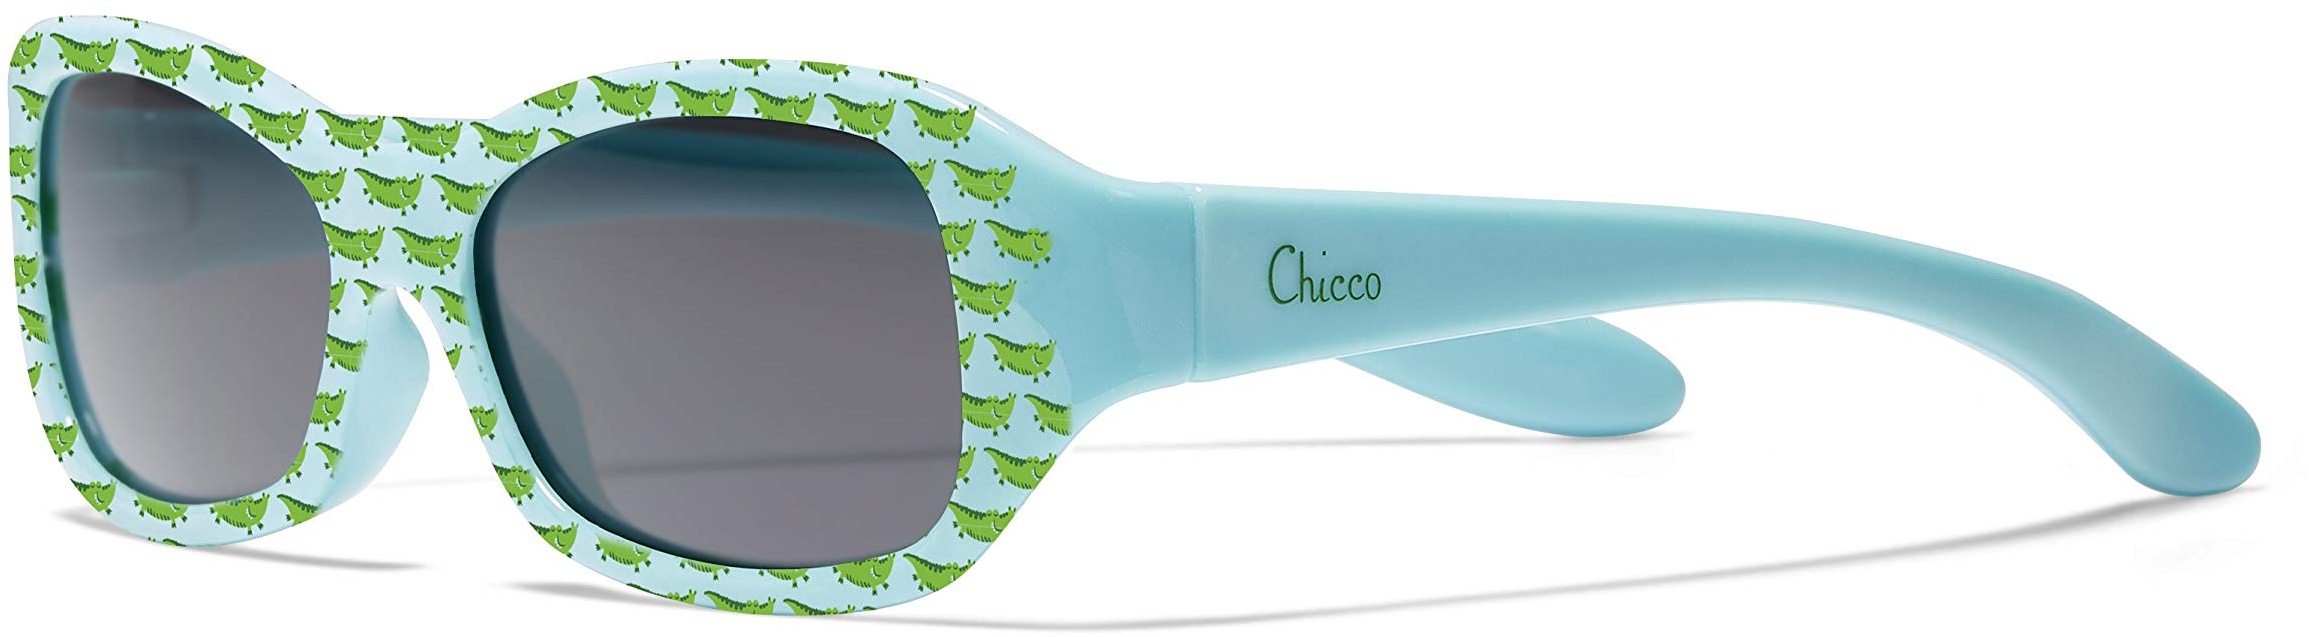 Chicco Sonnenbrille für Kinder, 12 m+, robuste und kratzfeste Gläser, schützt vor UVA- und UVB-Strahlen, flexibler Rahmen, mehrfarbig, inklusive Brillenetui für Kinder 36 Monate, 1 Stück